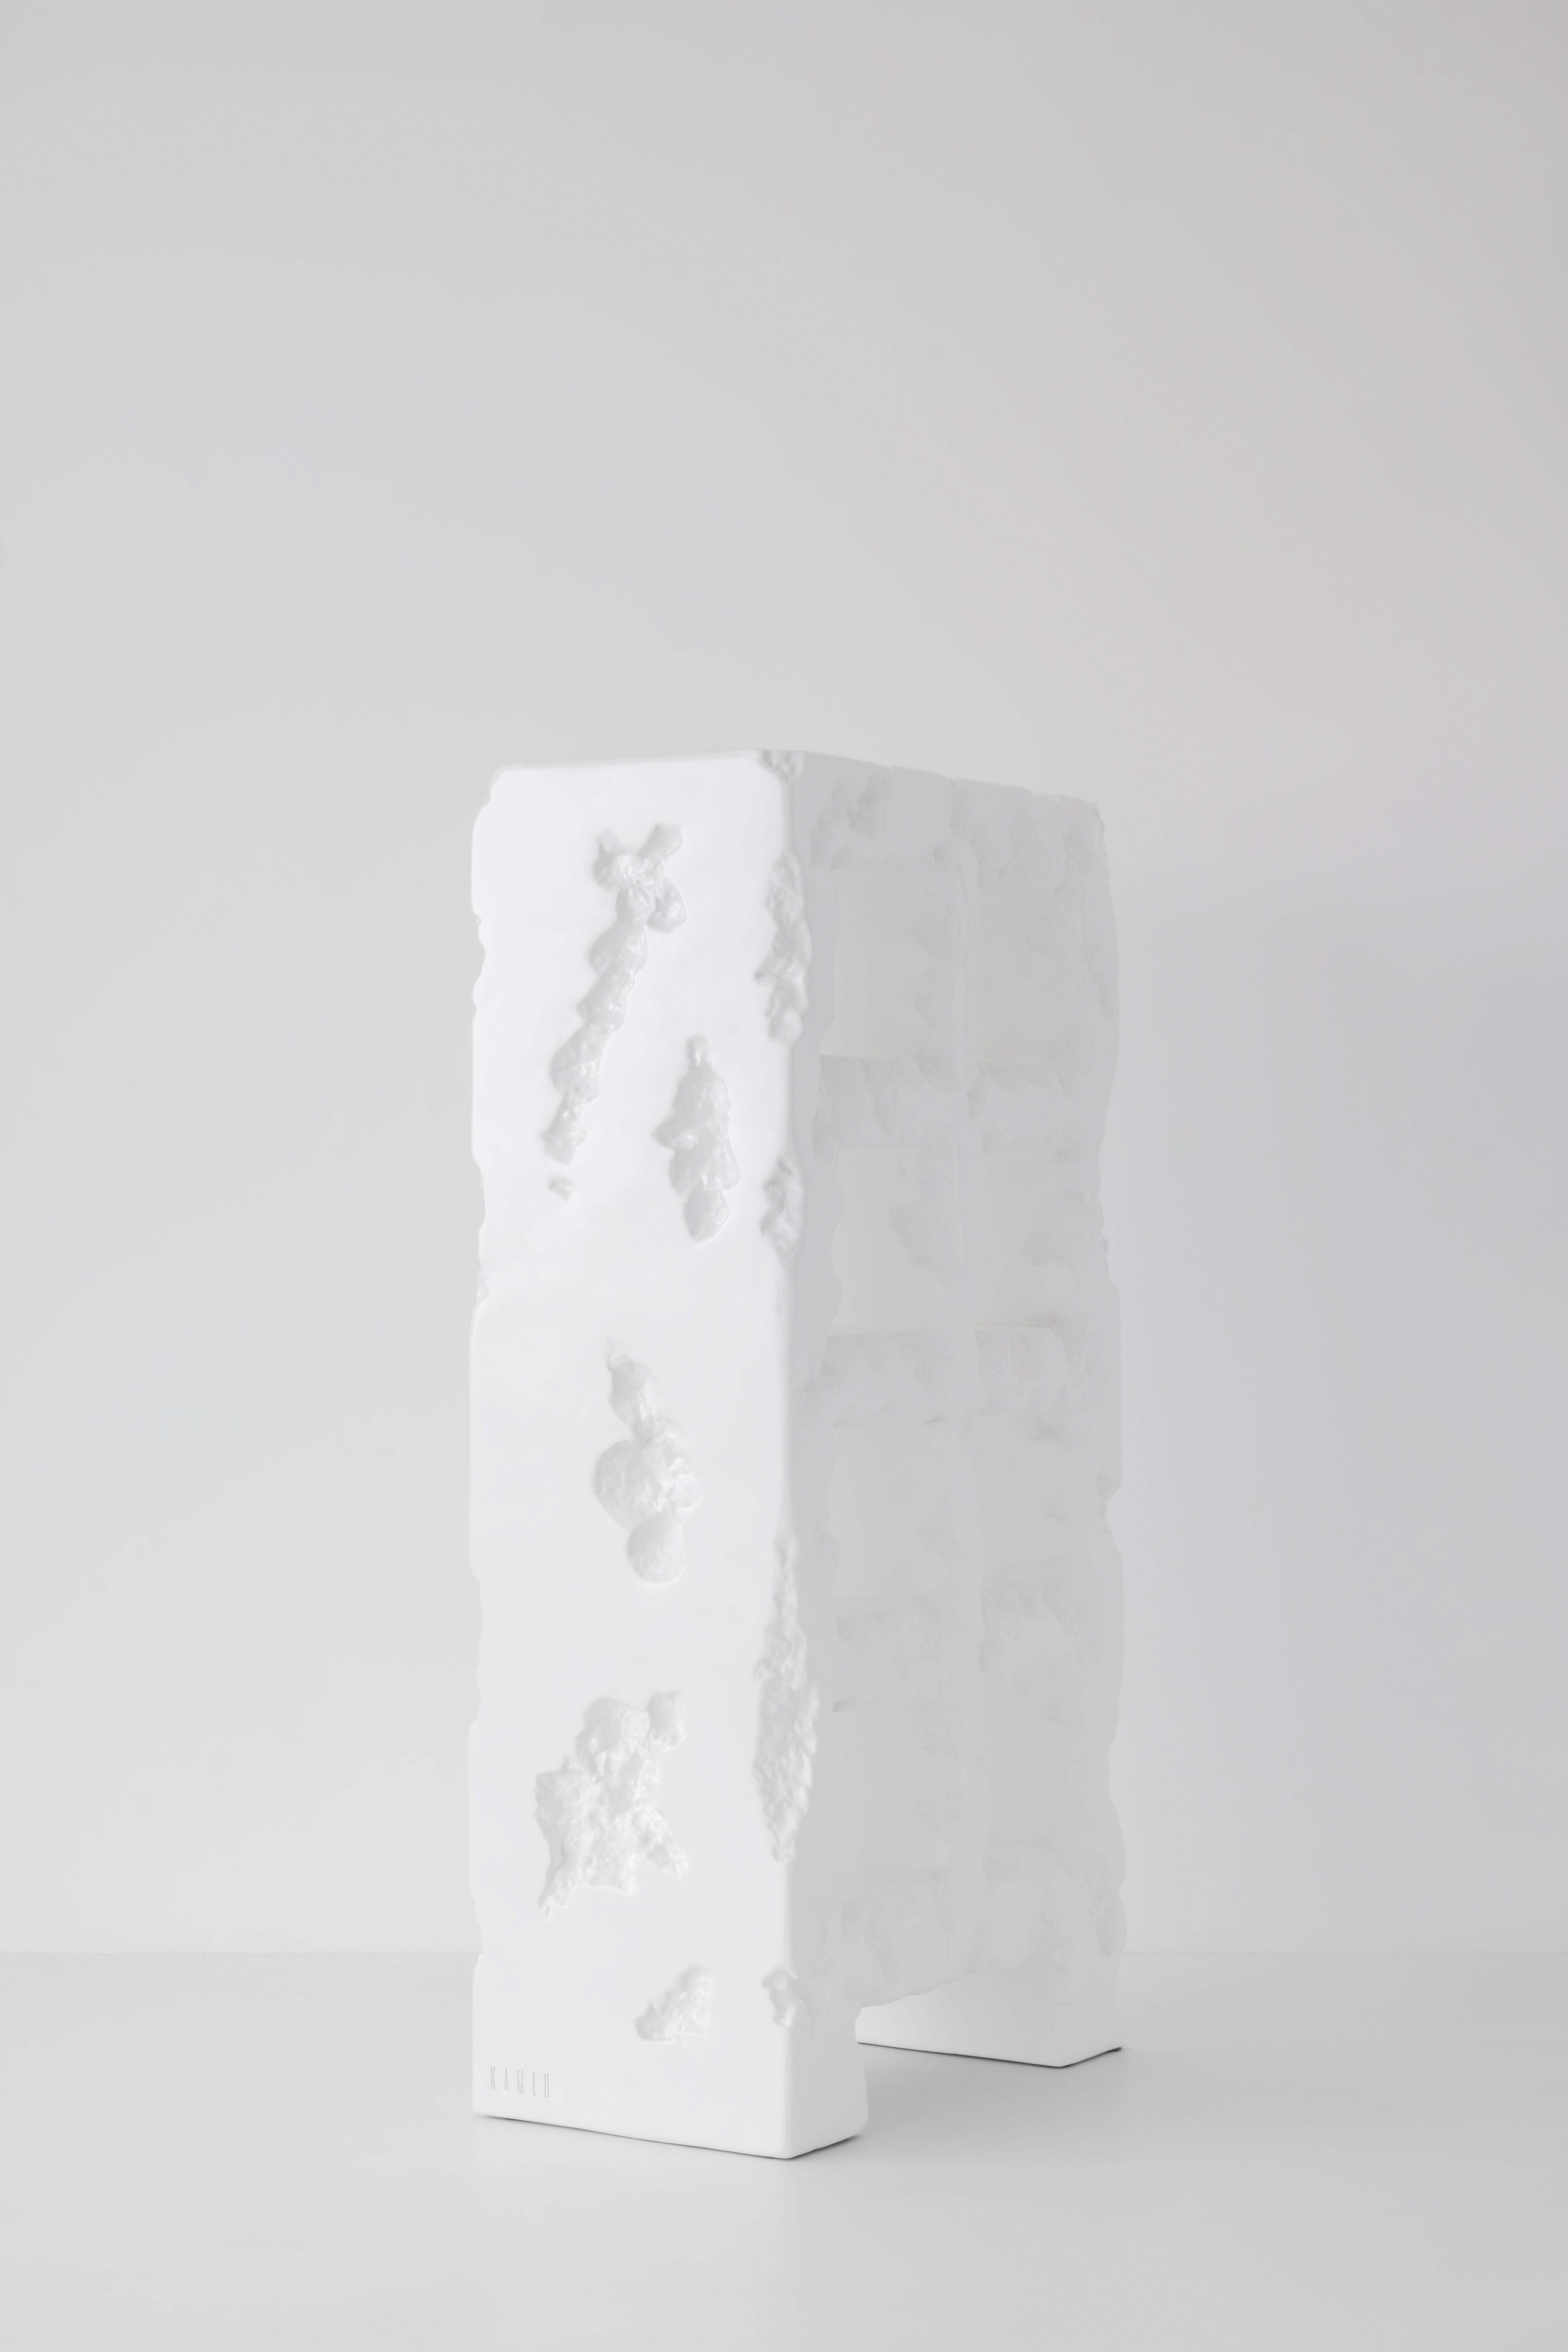 Kameh 0.1 Bücherregal, hergestellt mit Techniken und mehreren Schichten von Materialien, die das menschliche Selbst darstellen. Die Metallkonstruktion des Rahmens als Knochen und physischer Körper, die Weichheit des Schaums, der den inneren Kern des